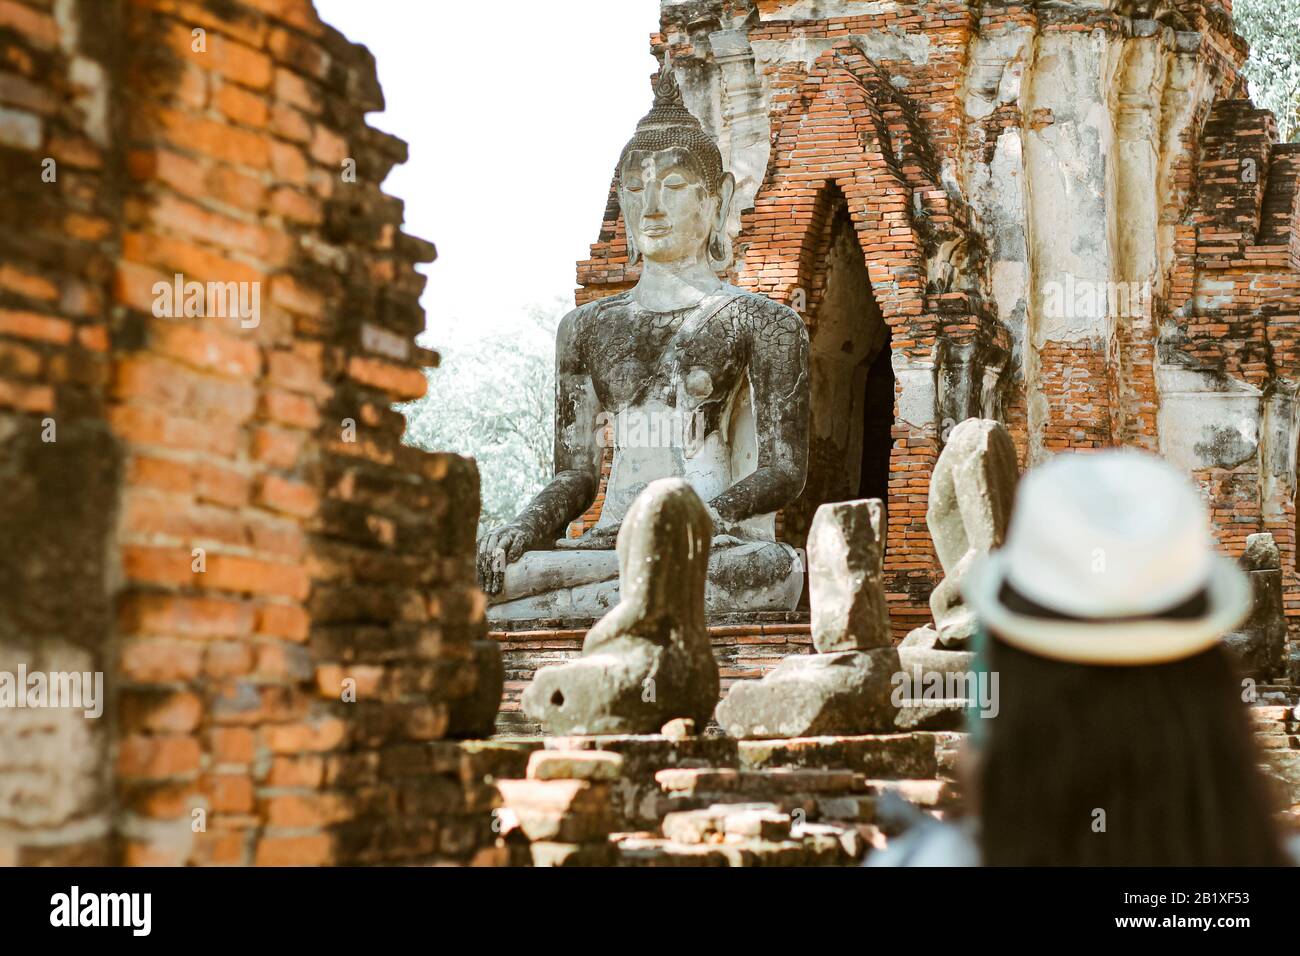 Ein Tourist, der den historischen Park Ayutthaya (im Mittelpunkt der Geschichte) erkundet, der eines der berühmten kulturellen Reiseziele in Thailand ist Stockfoto